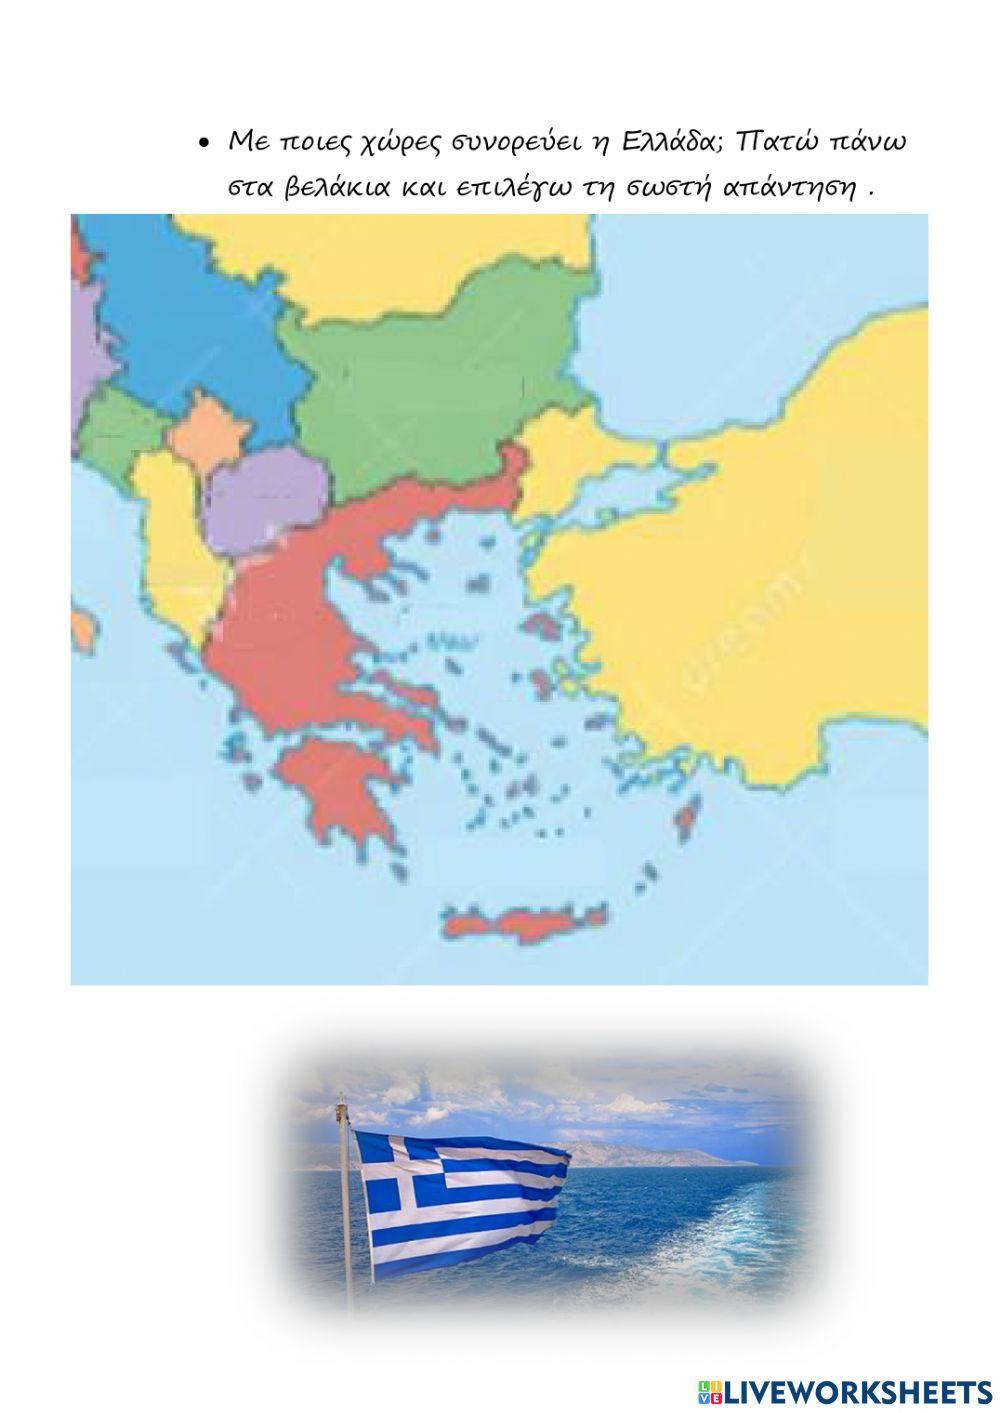 Πρώτη γνωριμία με την Ελλάδα